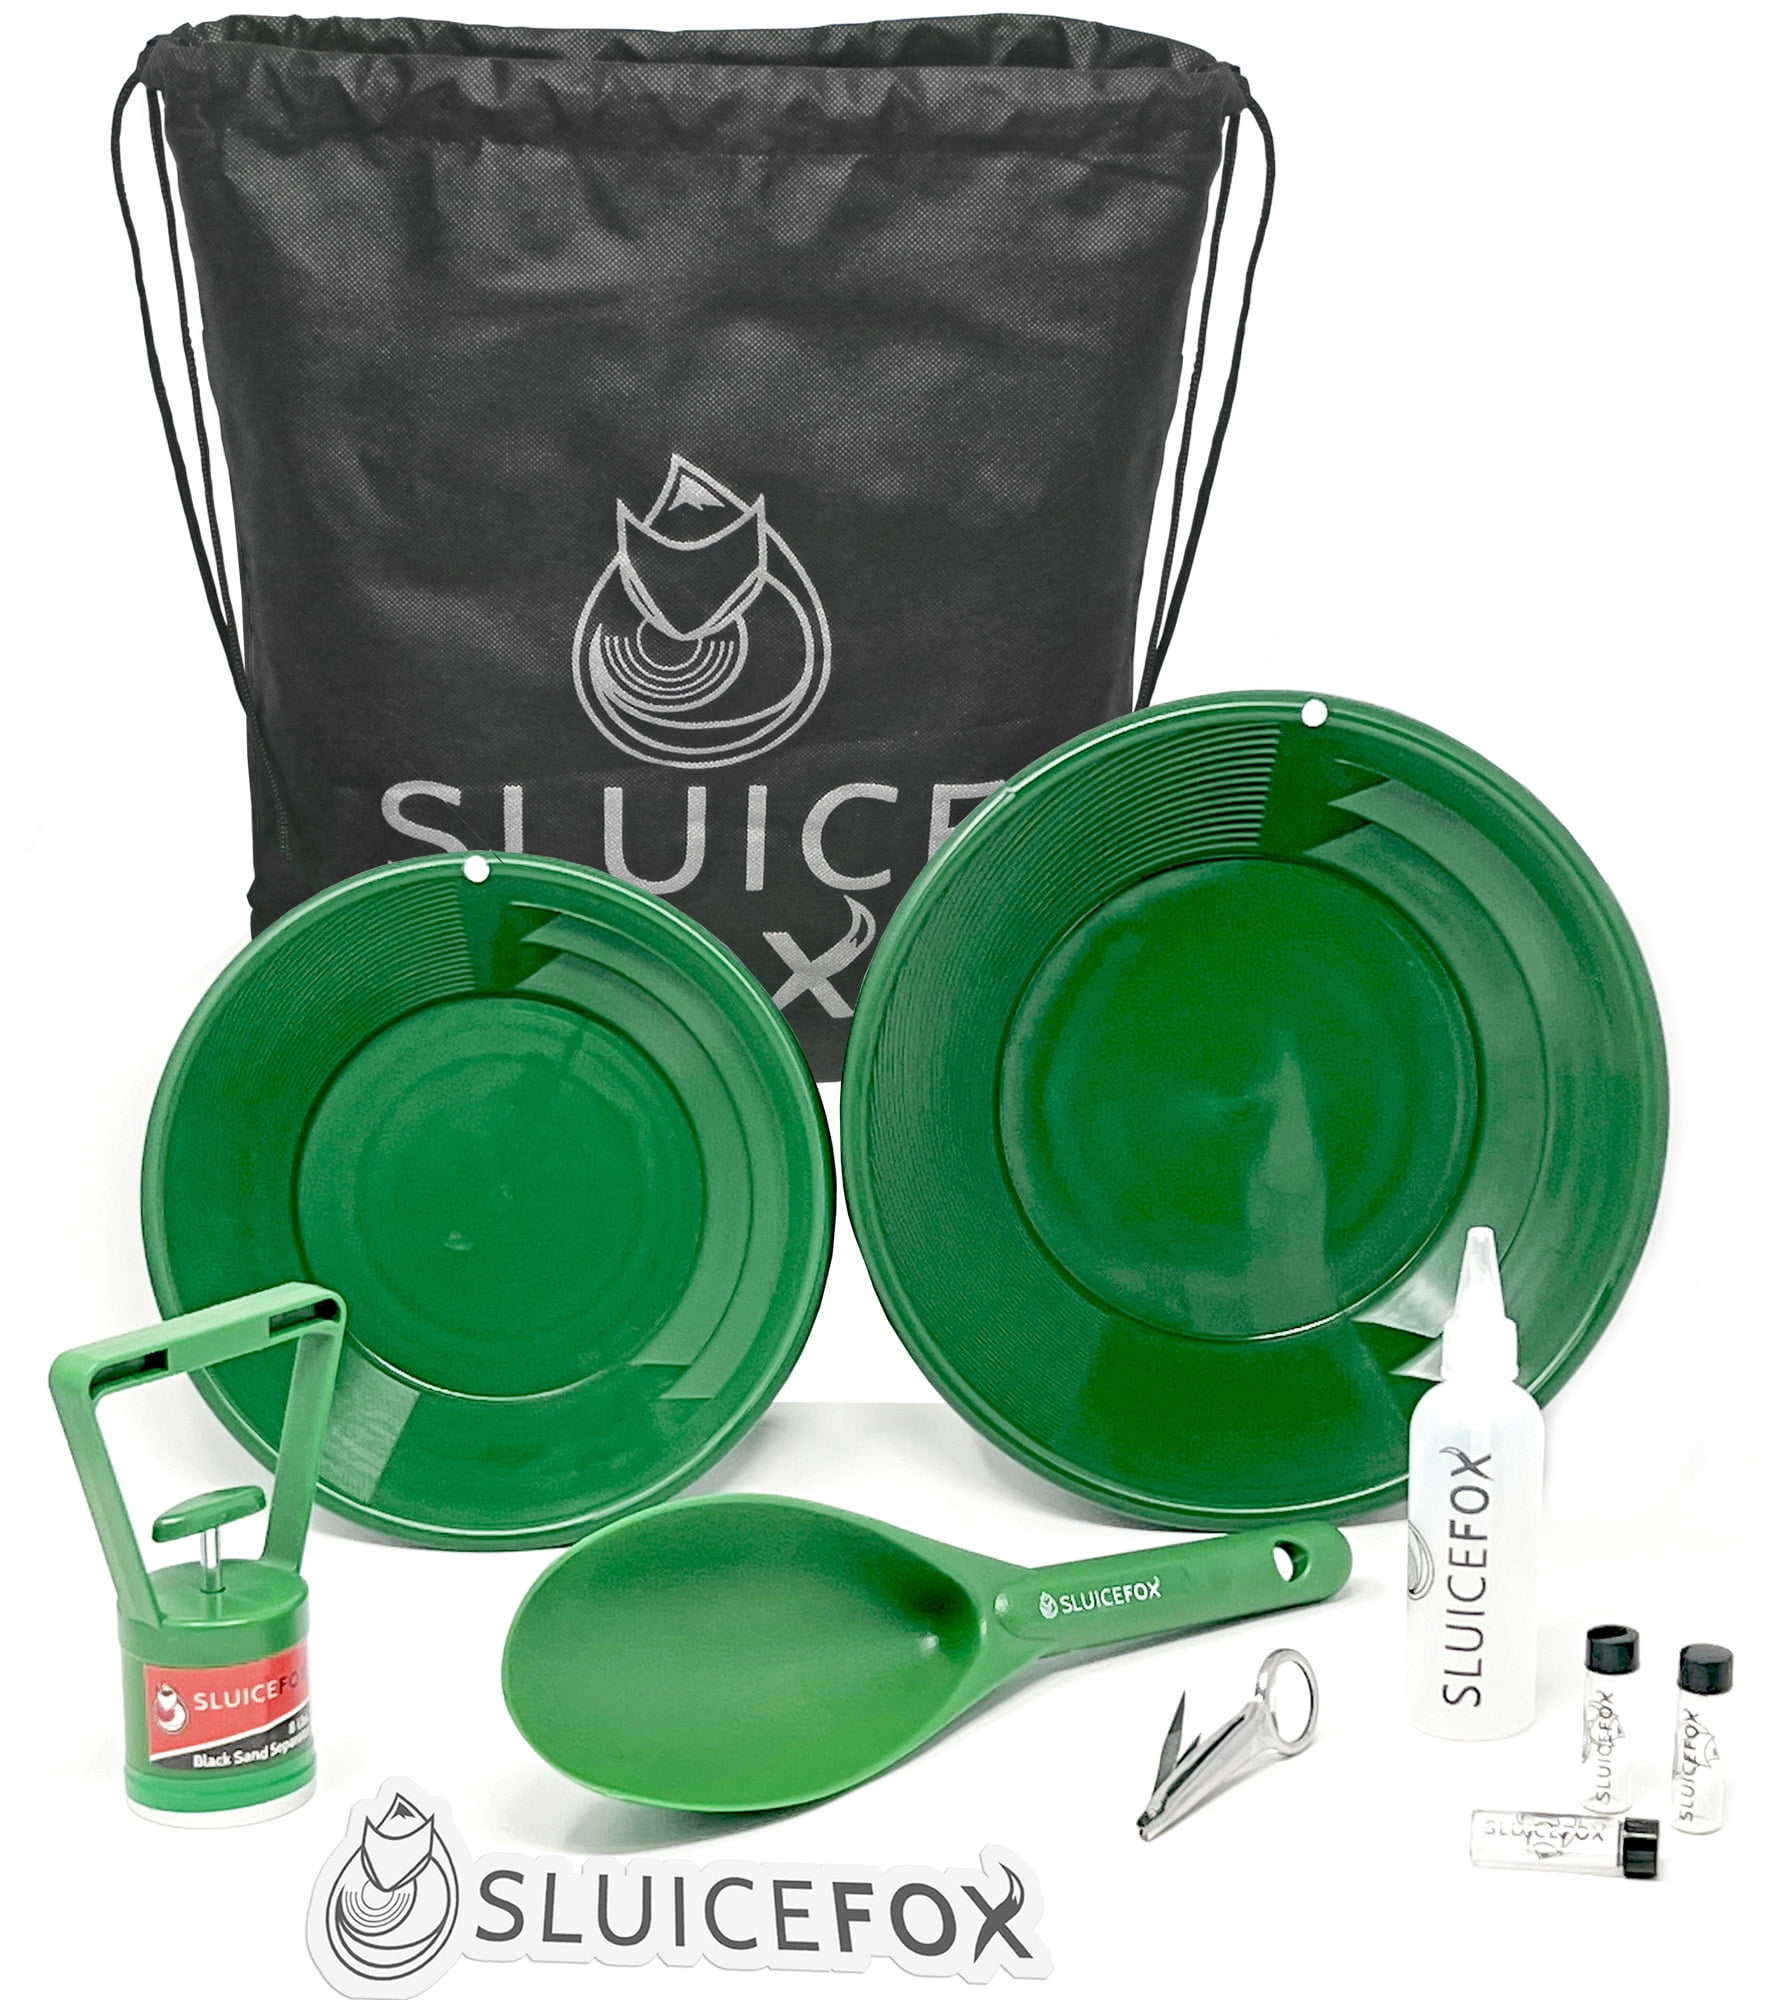 Sluice Fox 7 Piece Gold Panning Kit Classifier, Gold Pans, Vials, Sniffer Bottle, Tweezers, Adult Unisex, Size: One Size